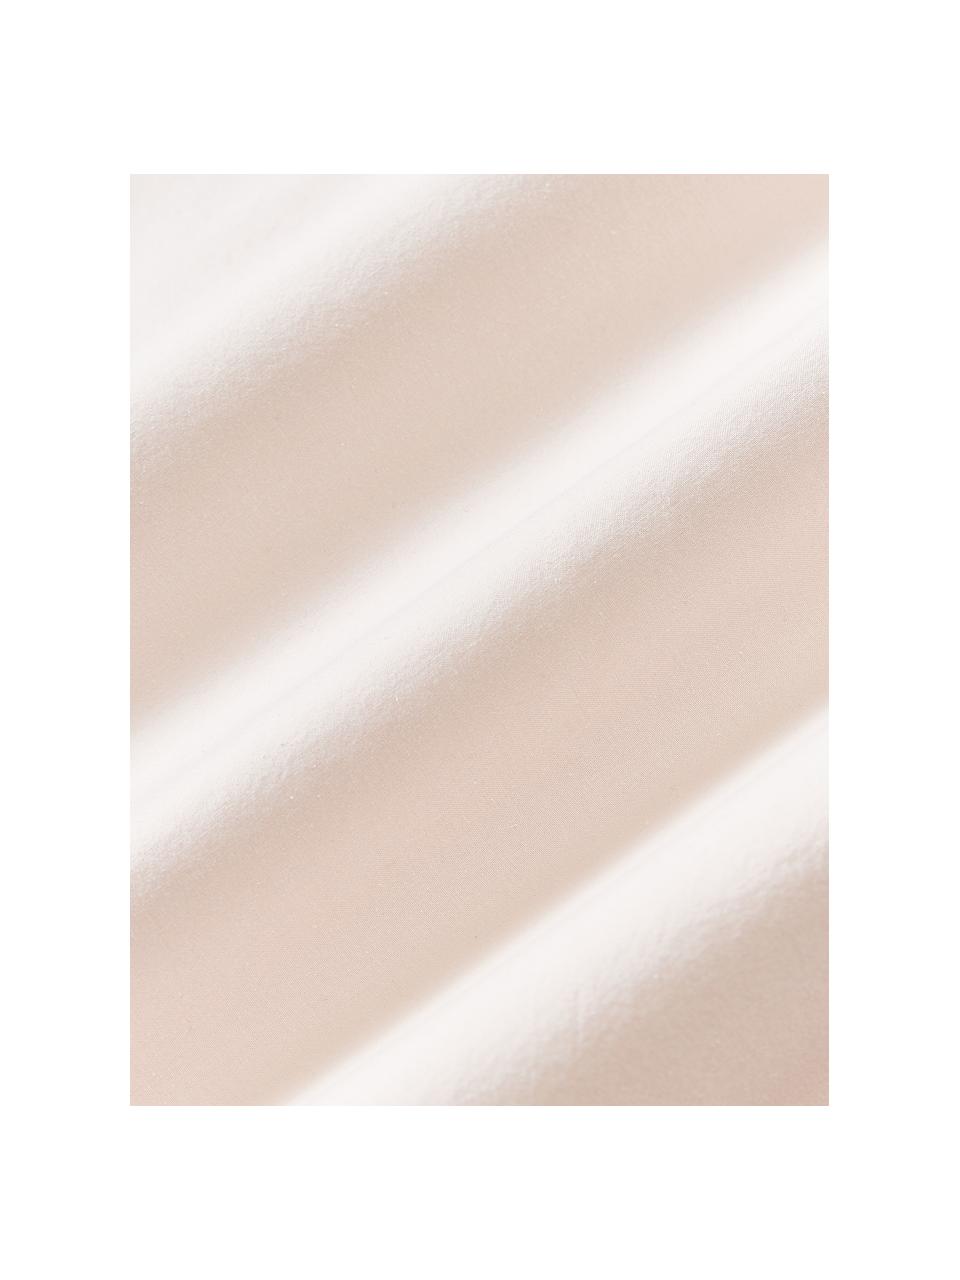 Baumwoll-Bettdeckenbezug Adoria mit Rüschen, 100 % Baumwolle

Bettwäsche aus Baumwolle fühlt sich auf der Haut angenehm weich an, nimmt Feuchtigkeit gut auf und eignet sich für Allergiker.

Durch die Stückfärbung wird der Stoff weich und geschmeidig im Griff, was diese Bettwäsche besonders charmant macht.

Das in diesem Produkt verwendete Material ist Schadstoff geprüft und zertifiziert nach STANDARD 100 by OEKO-TEX®, 137, CITEVE., Rosa, B 200 x L 200 cm